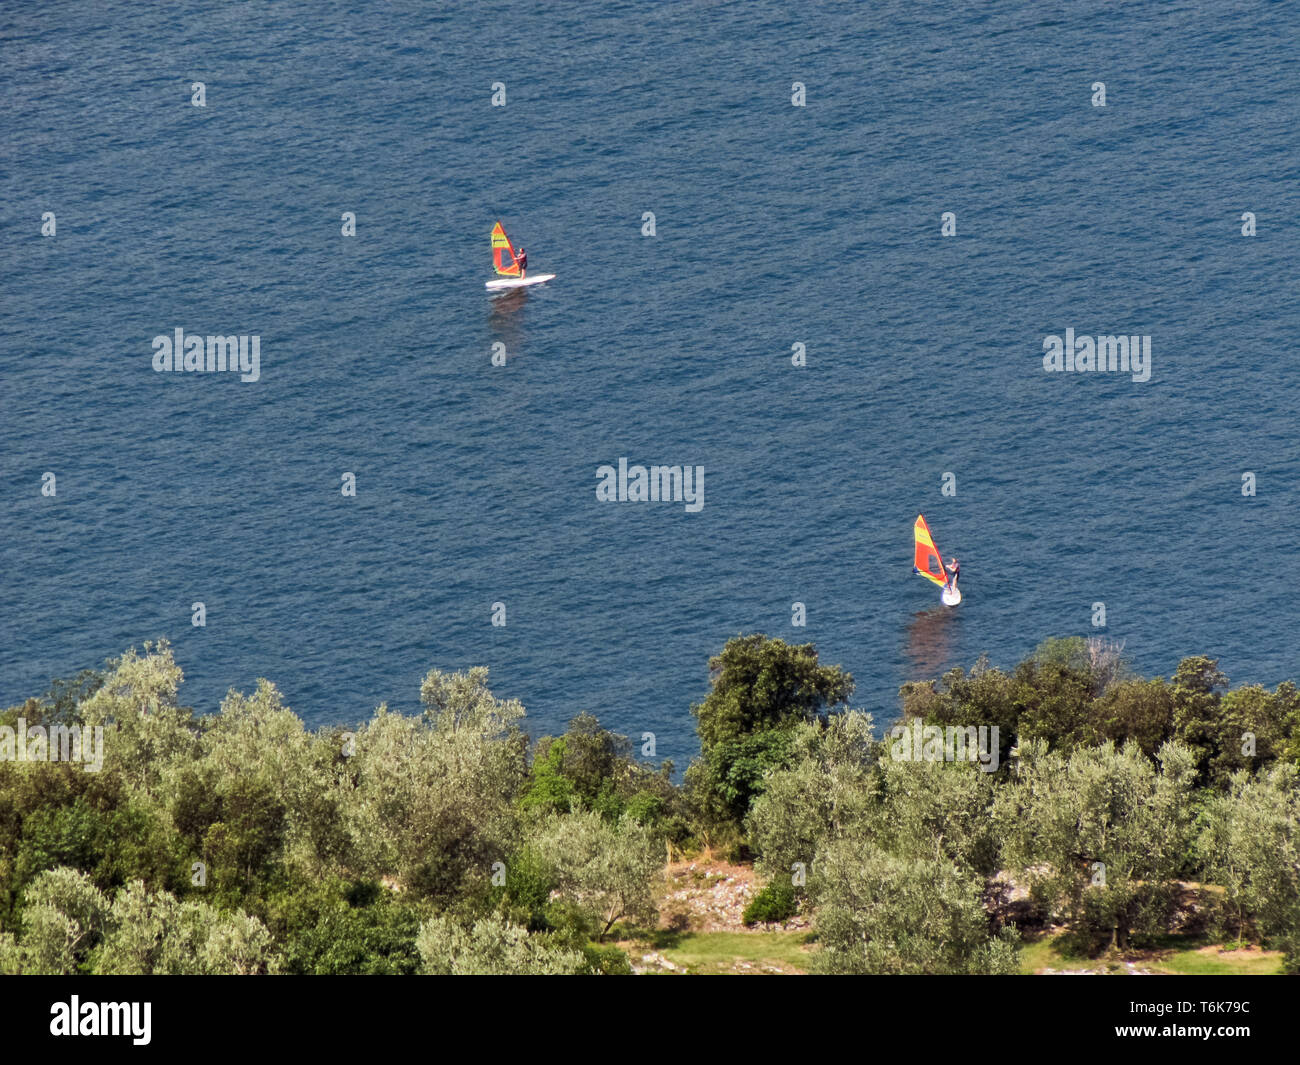 Windsurf sul lago di Garda nei pressi di Malcesine. Sulla costa, uliveti. [Ita] olivi e windsurf sul Lago di Garda nei pressi di Malcesine. Foto Stock